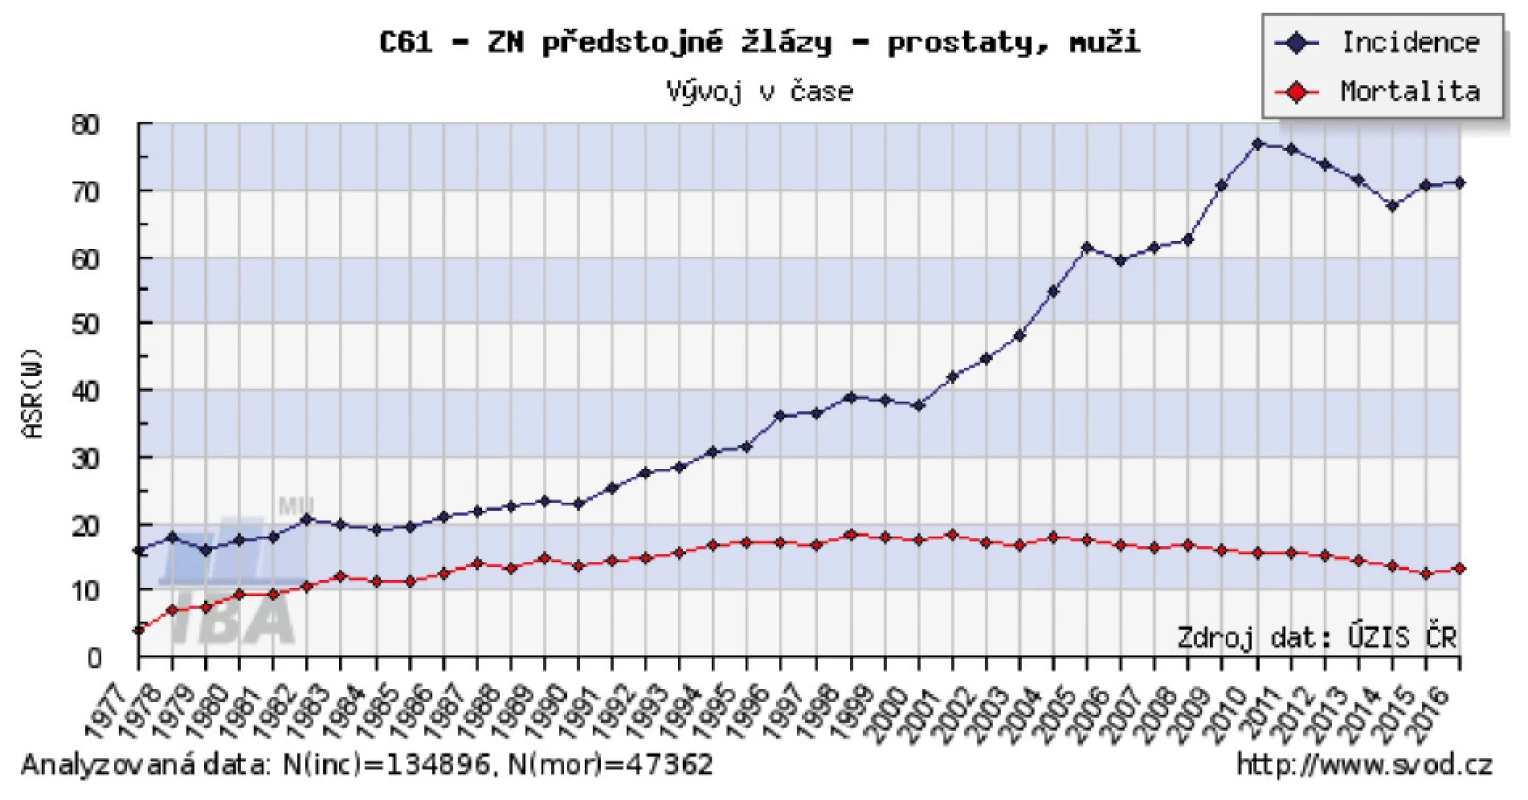 Křivka vývoje incidence a mortality karcinomu prostaty v ČR. Zdroj: www.svod.cz